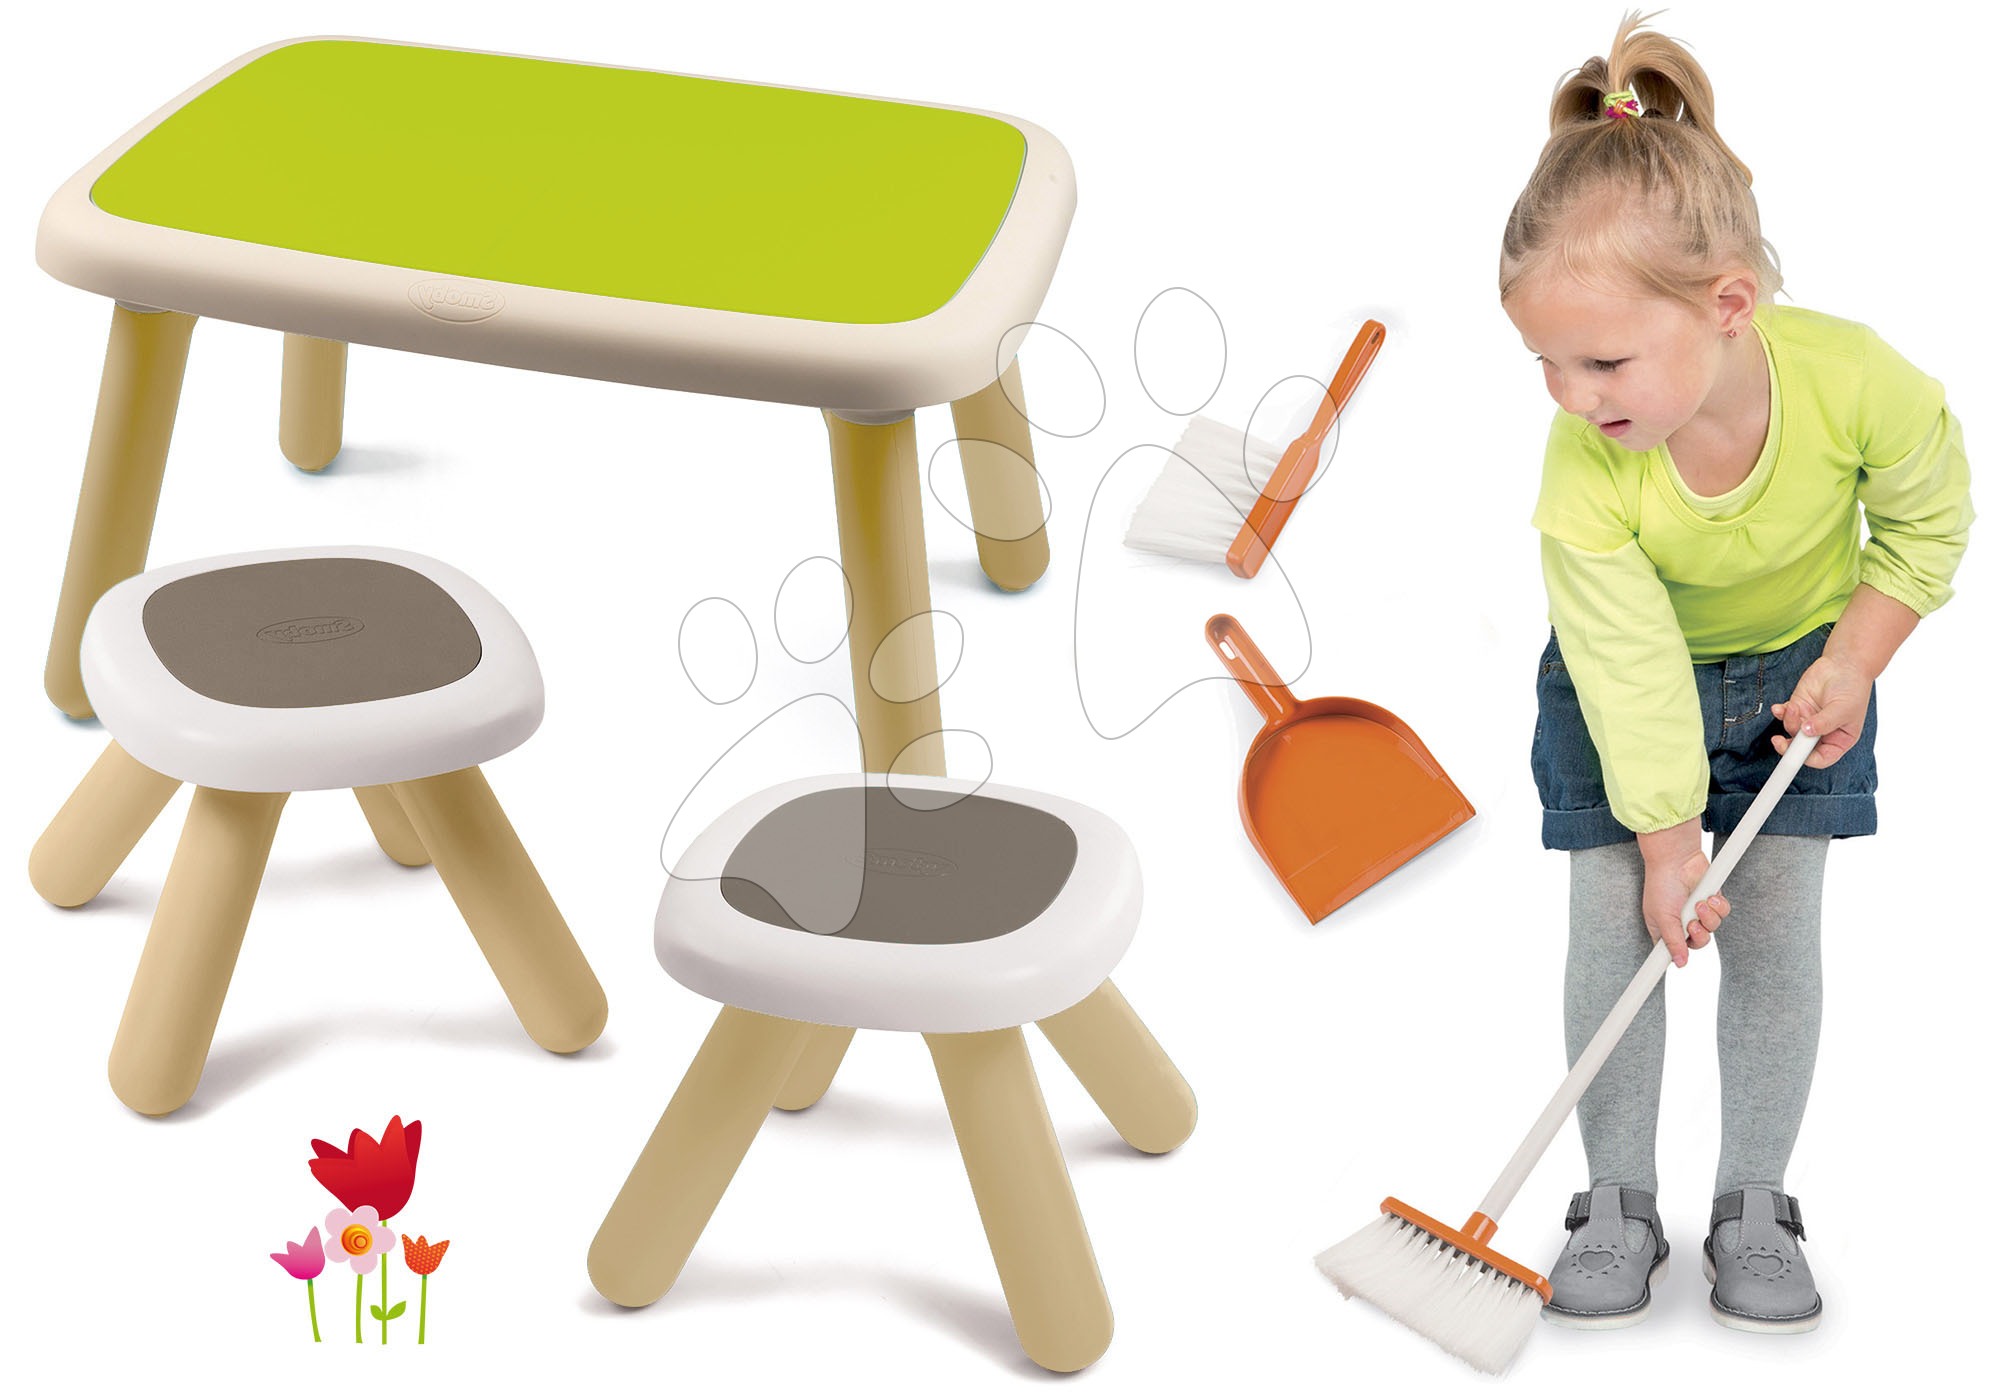 Set stůl pro děti KidTable zelený Smoby se dvěma stolky s UV filtrem a smeták s lopatkou